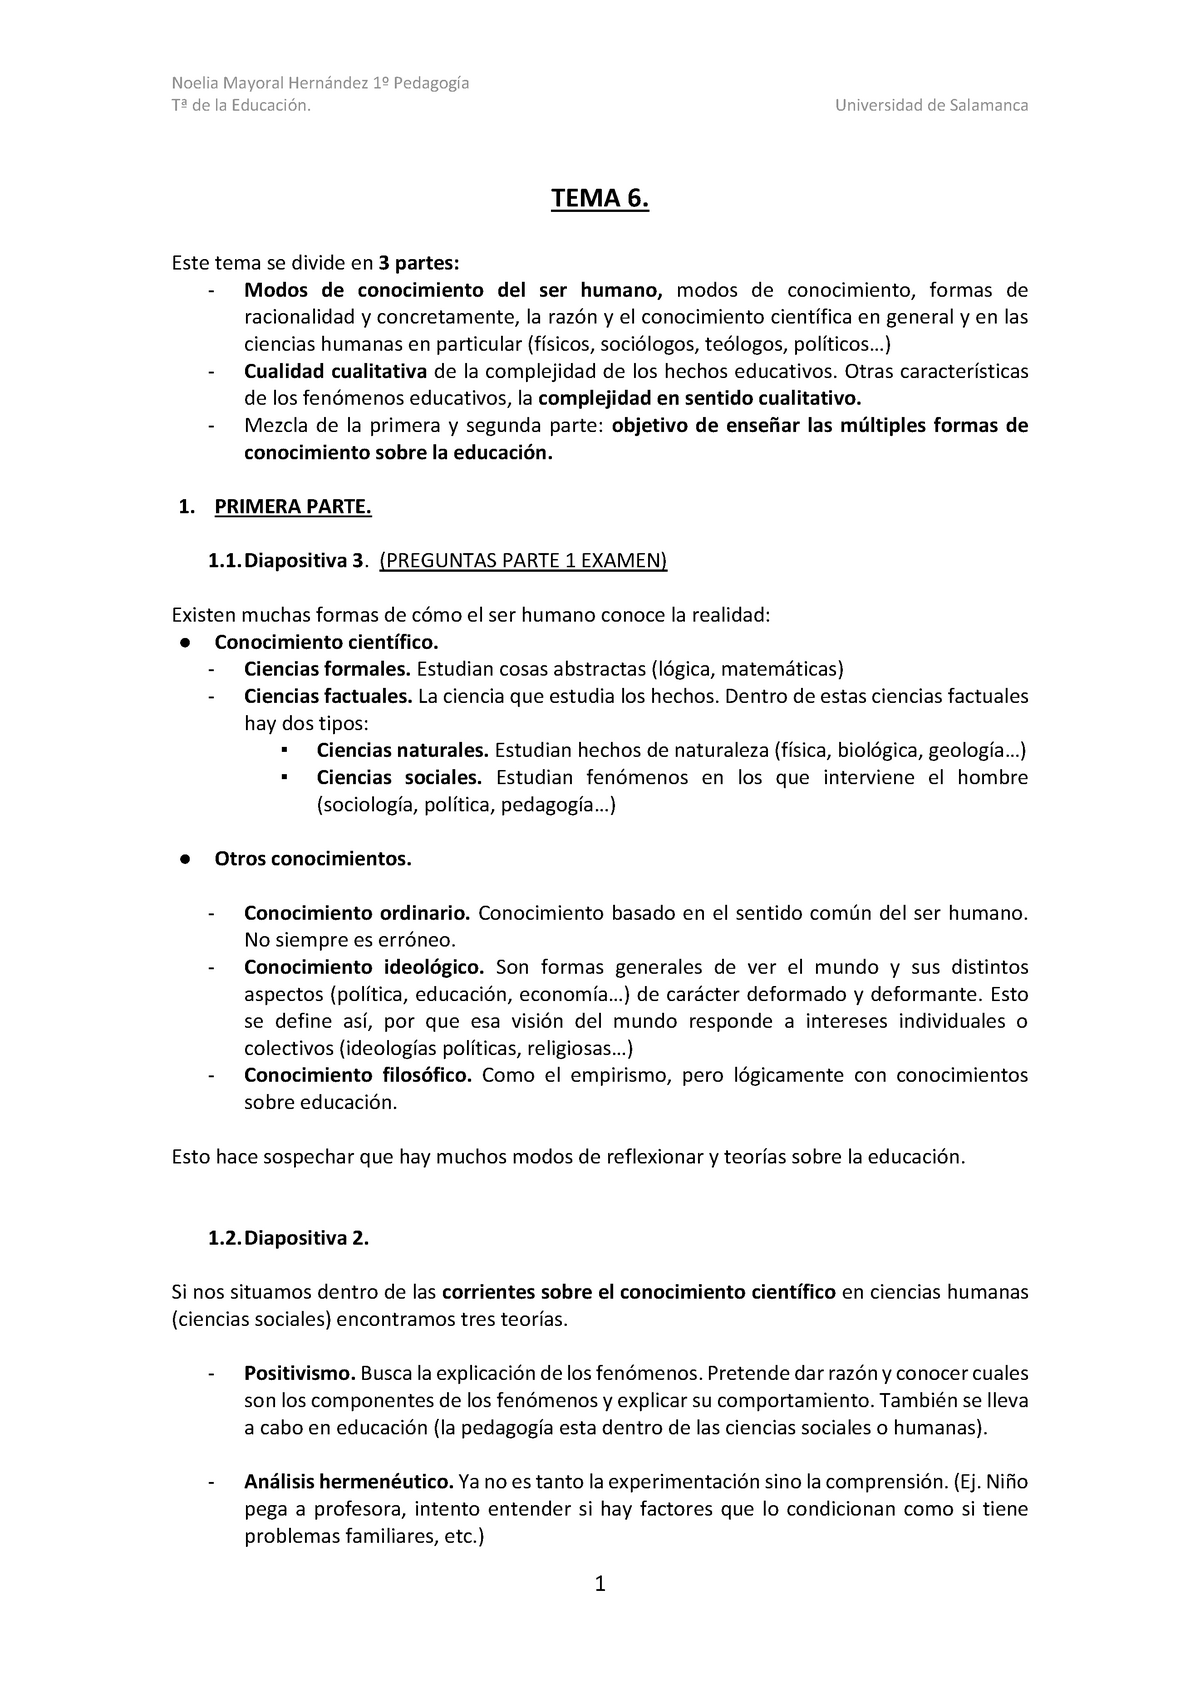 TEMA 6. Teoría de la educacion en la universidad de Salamanca - Tª de ...